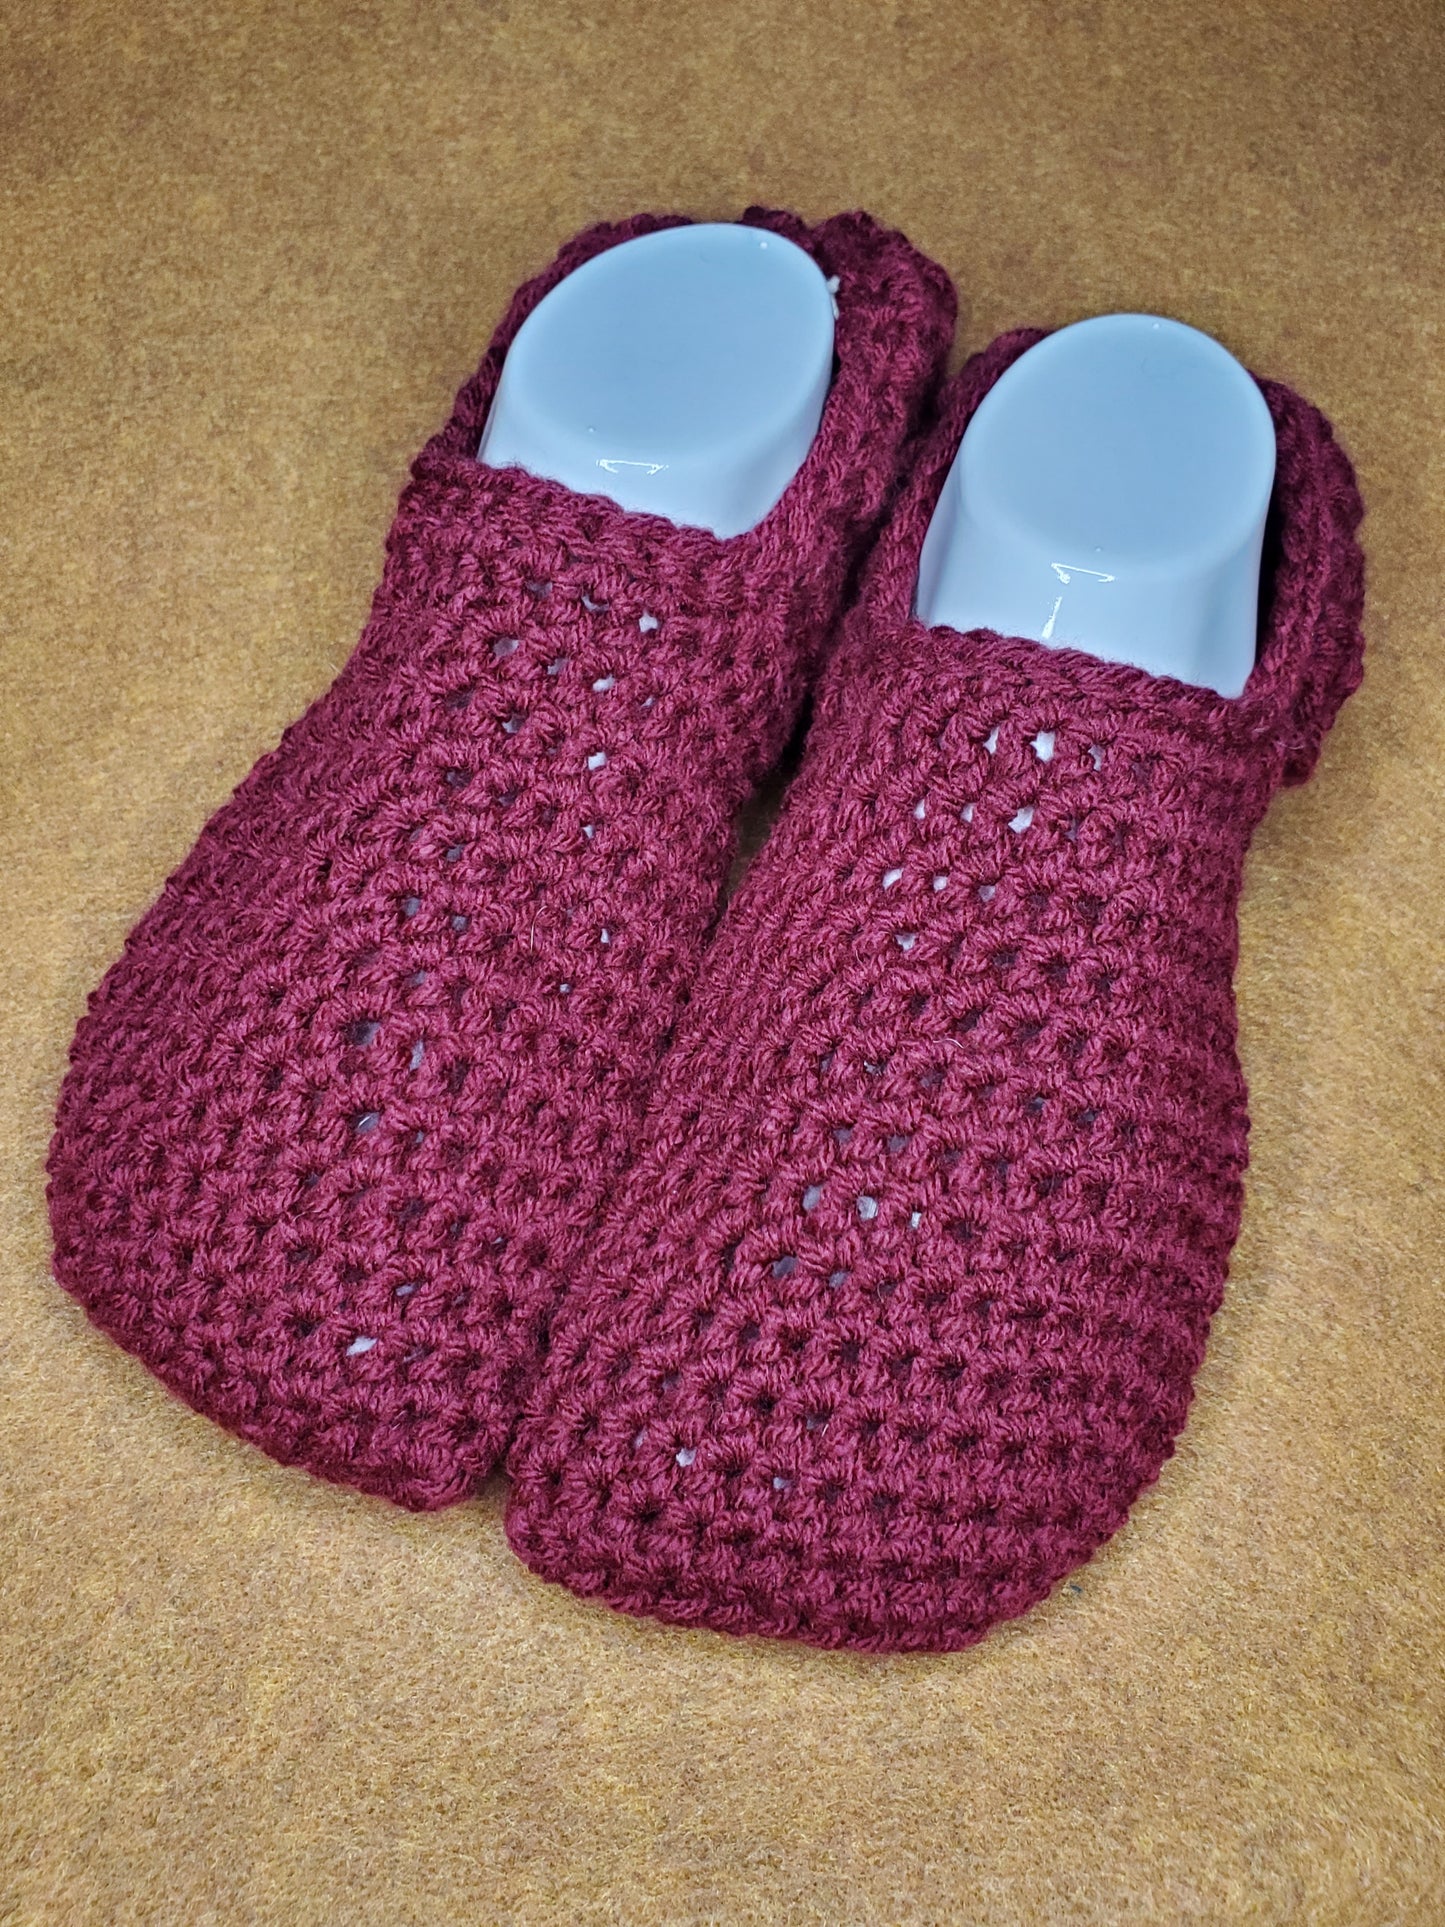 Slippers - crocheted slippers